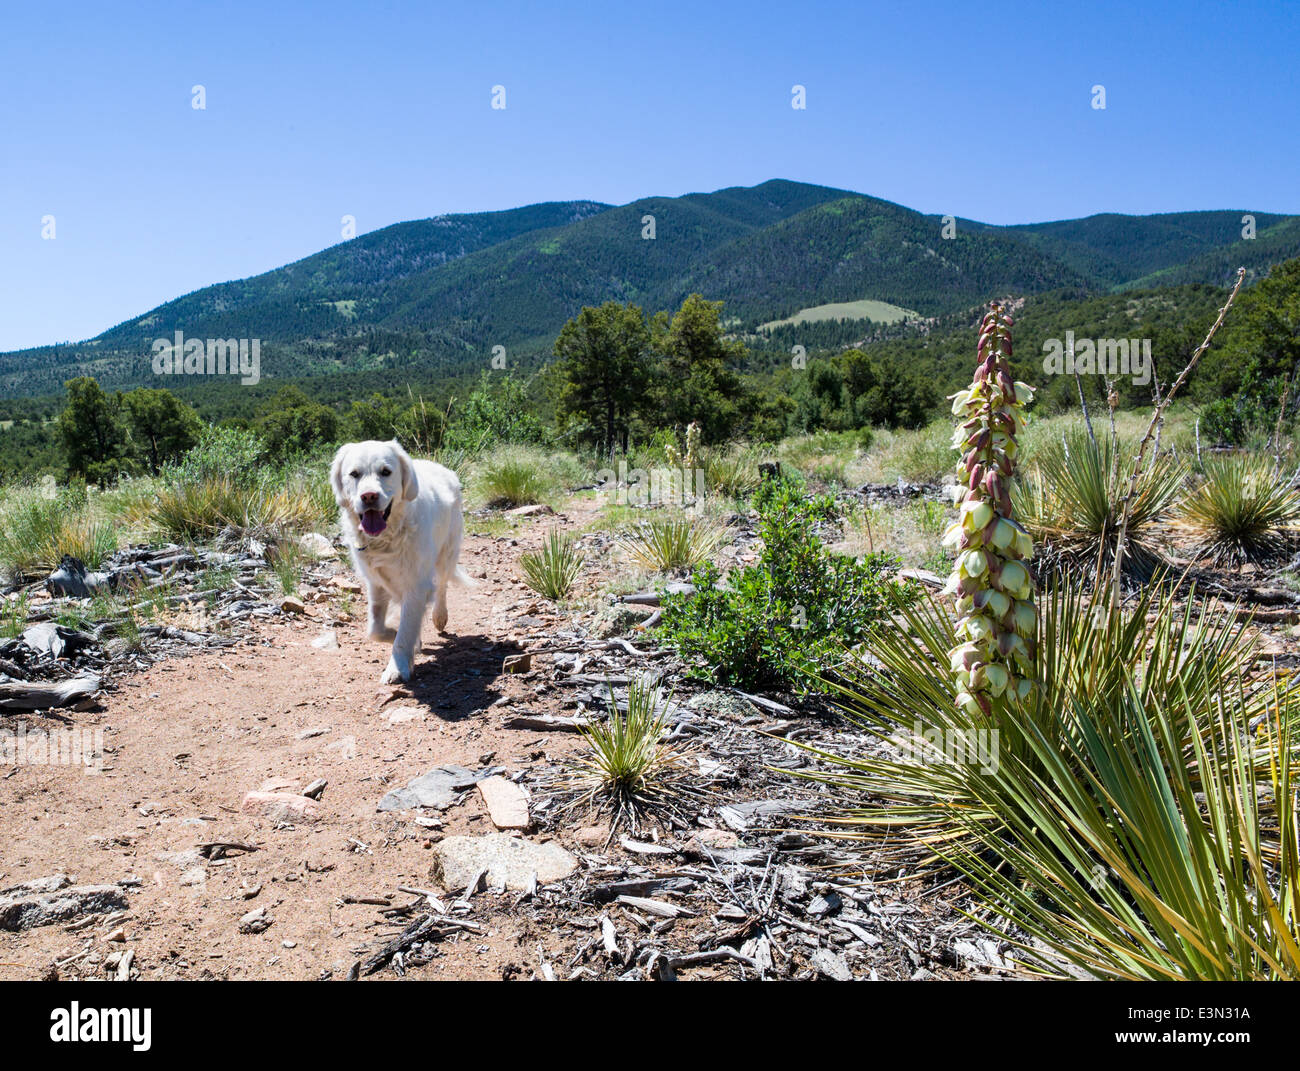 Platin farbige Golden Retriever Hund läuft auf einem Bergweg vorbei eine Yucca Pflanze. Stockfoto